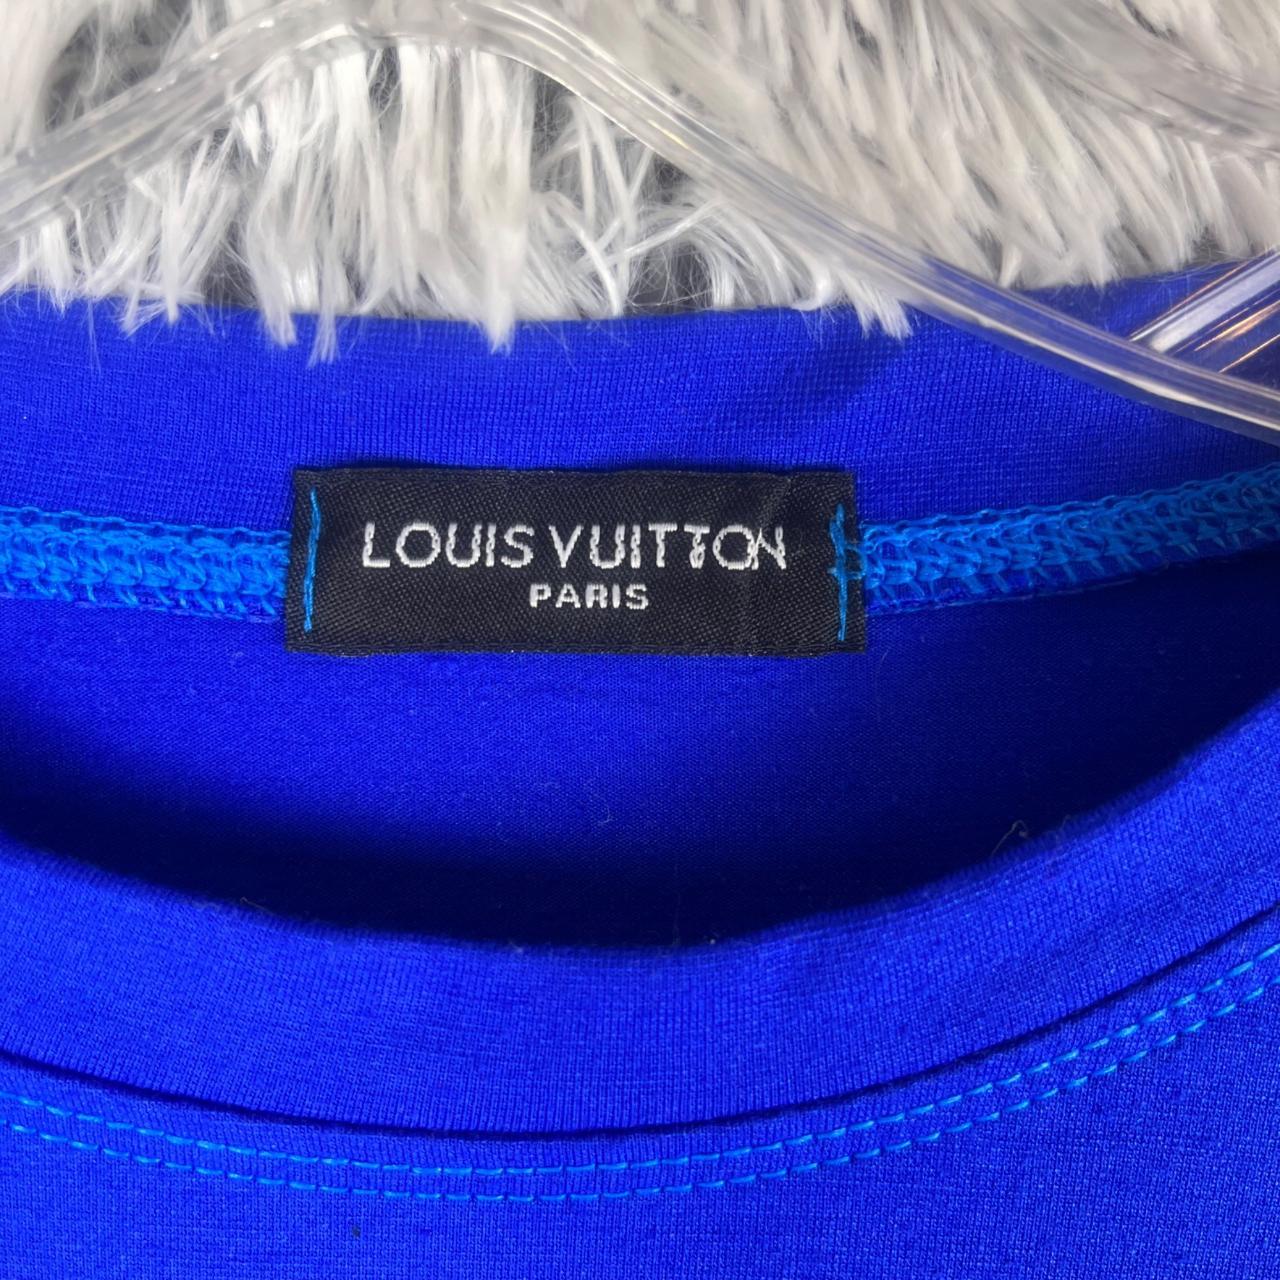 Authentic Louis Vuitton pale blue cotton button-down - Depop